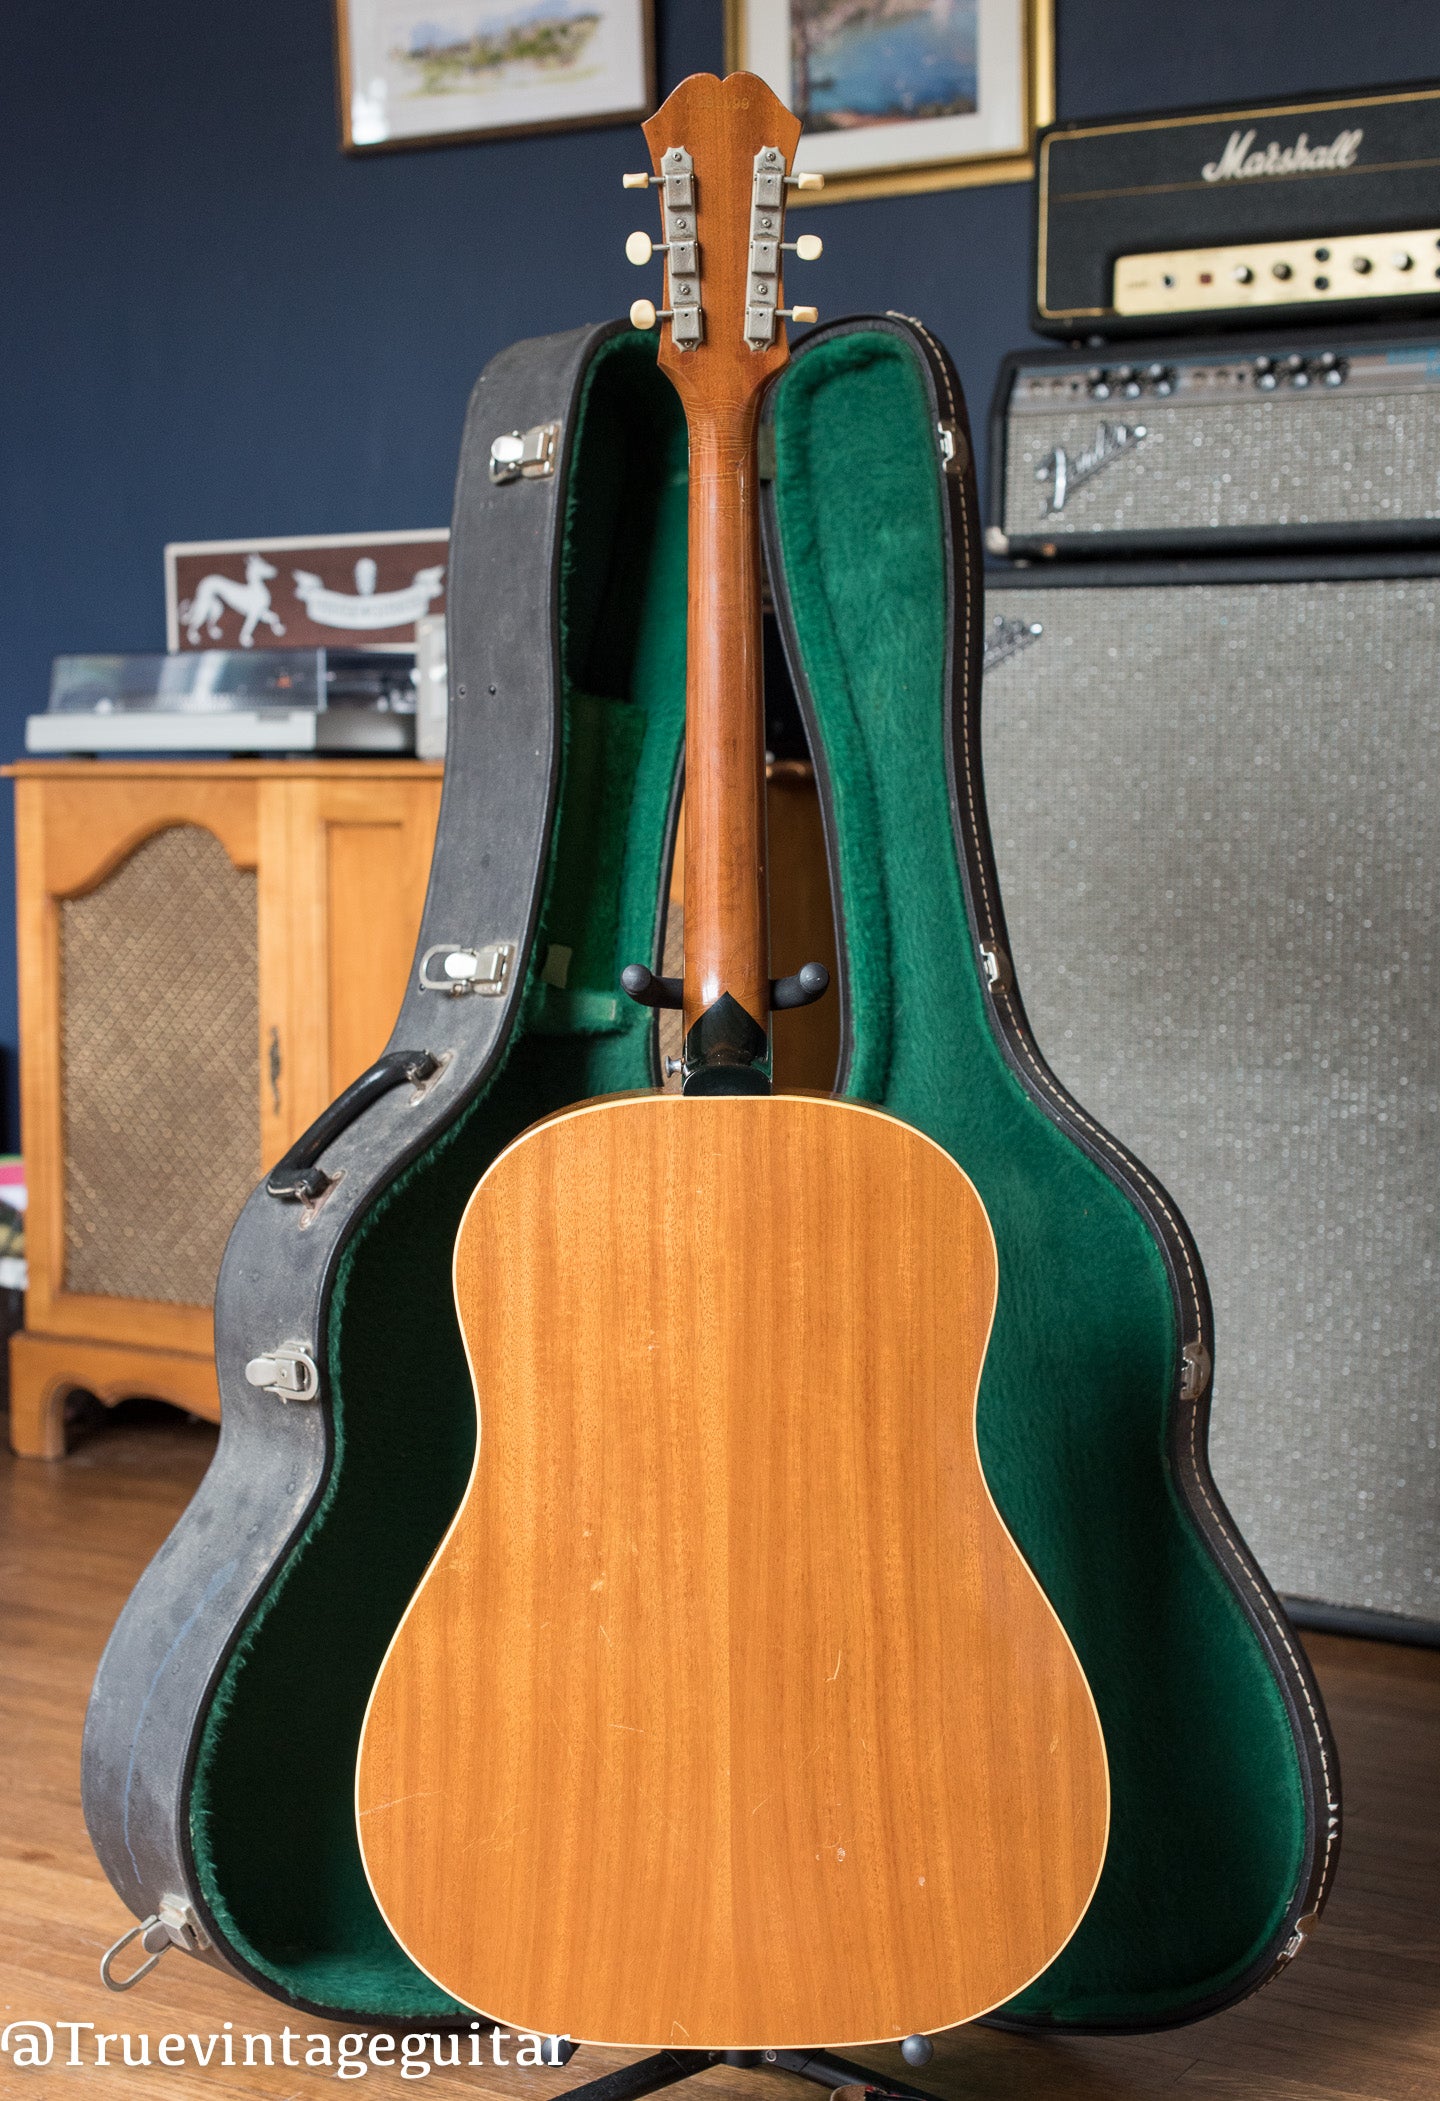 Vintage 1960s Epiphone acoustic guitar